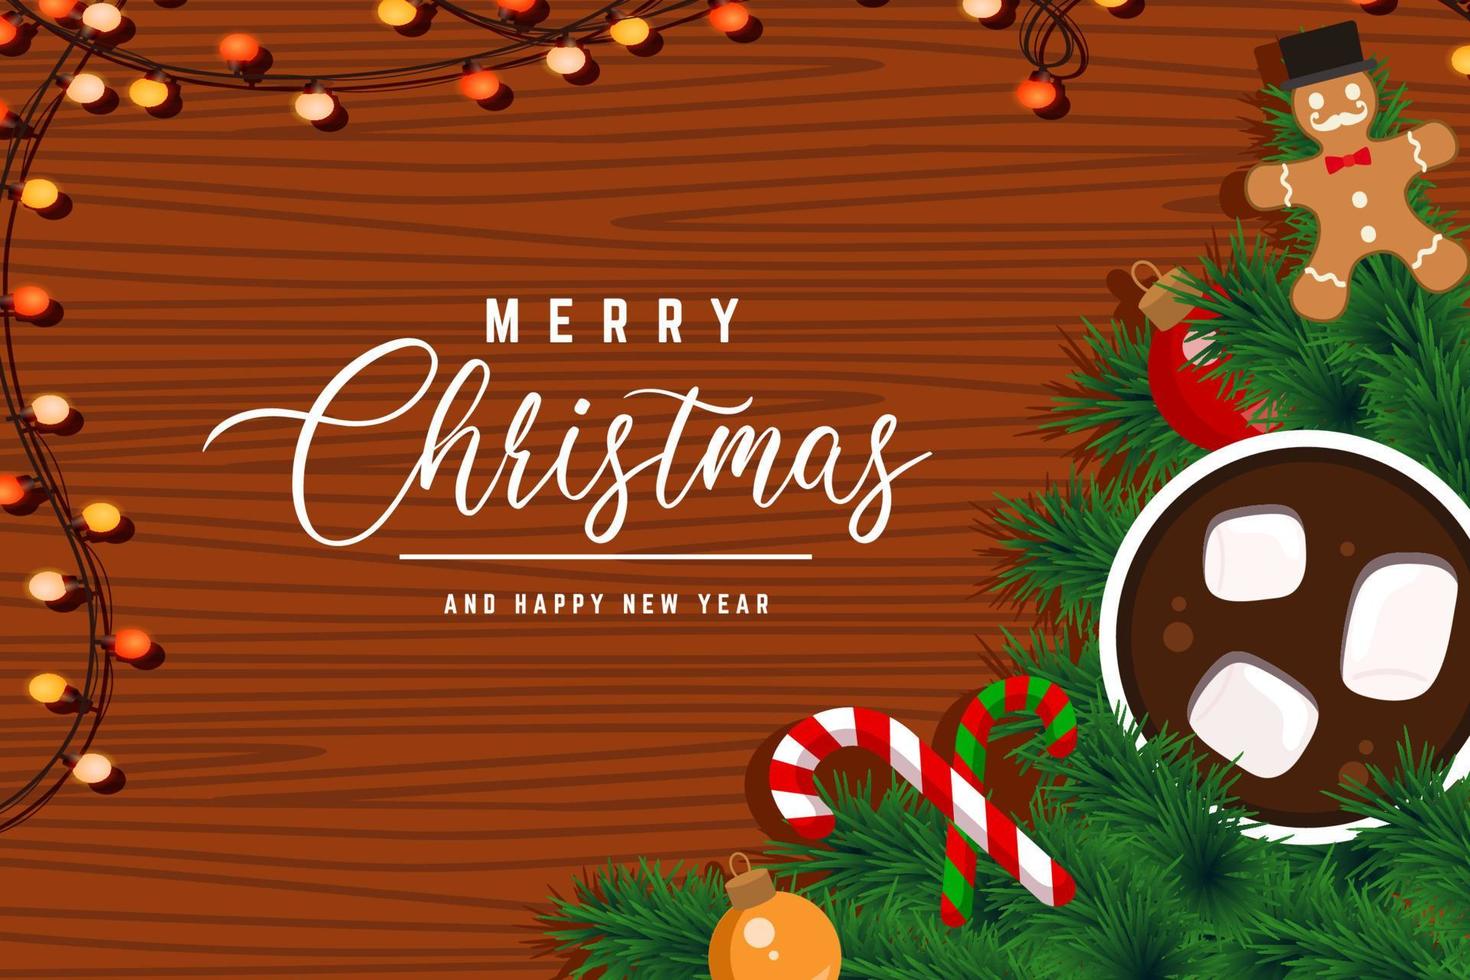 sfondo di cibo natalizio con pan di zenzero, bastoncino di zucchero e cioccolata calda vettore